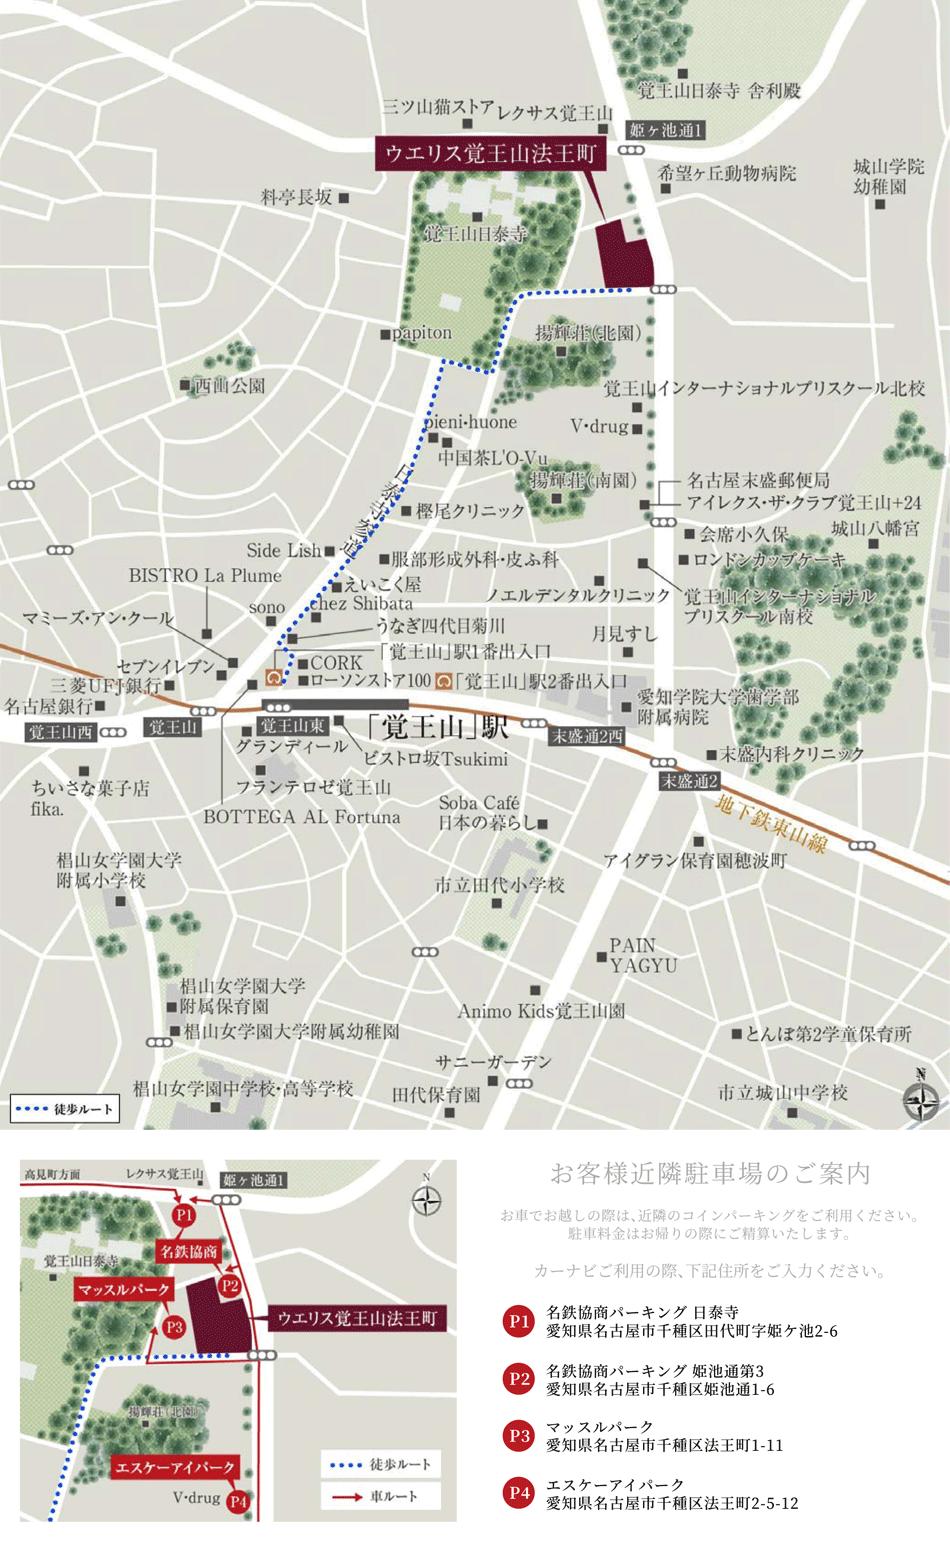 ウエリス覚王山法王町のモデルルーム案内図